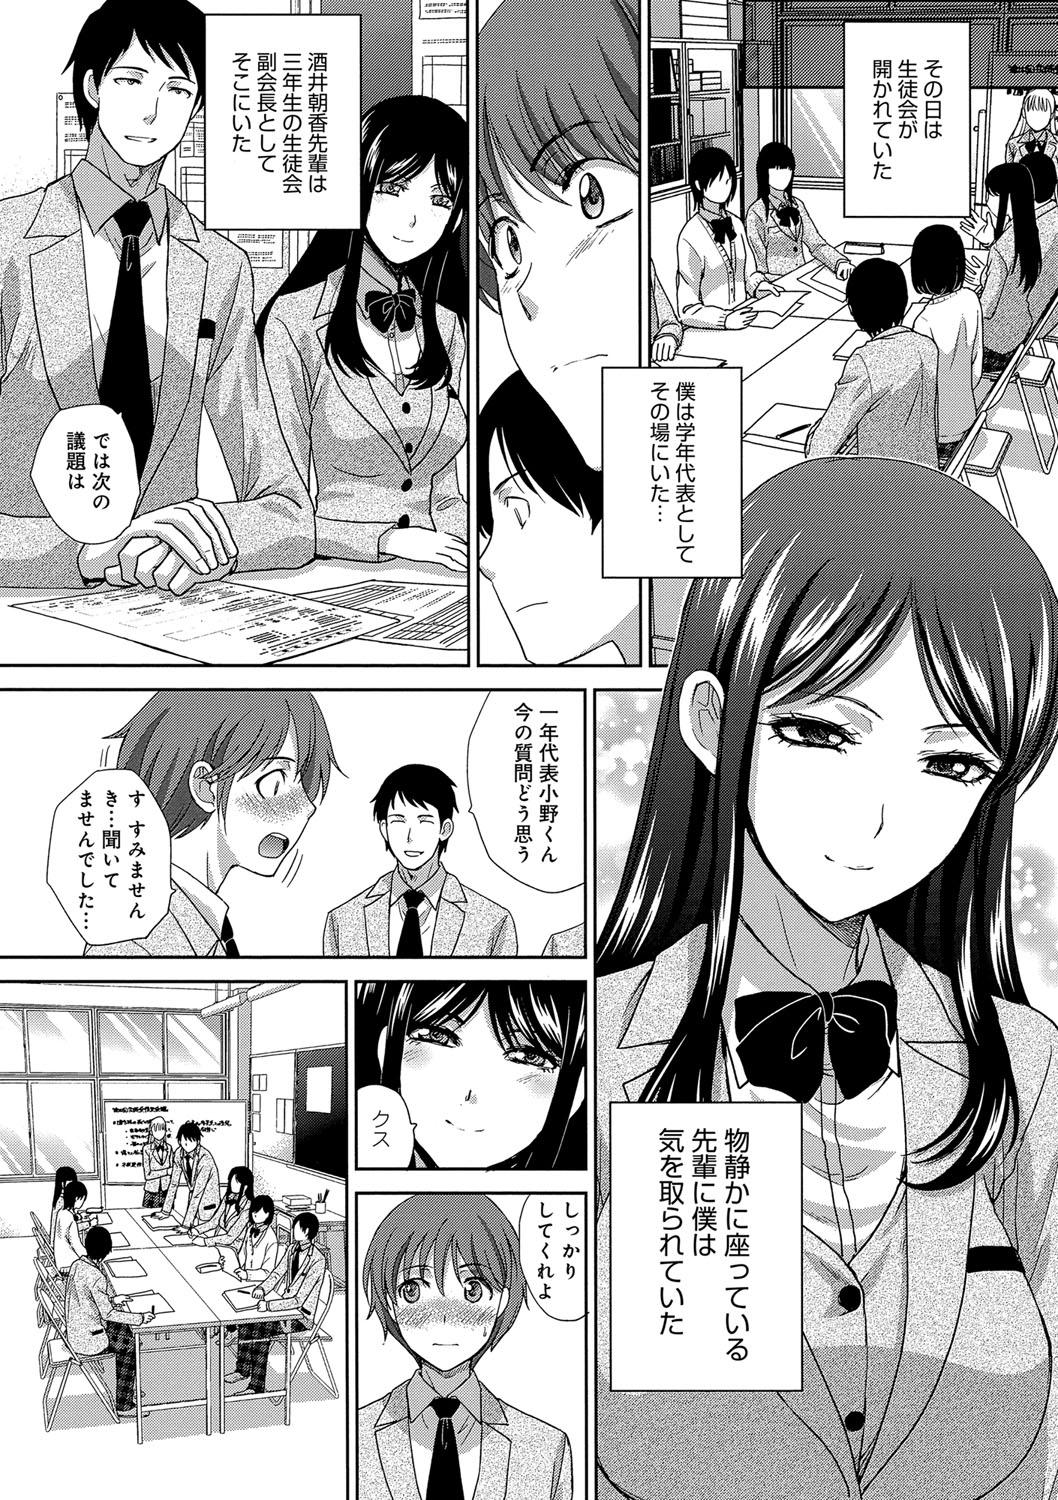 Machine Kono Haru, Kanojo ga Dekimashita. - I found a girlfriend in this spring Footfetish - Page 6